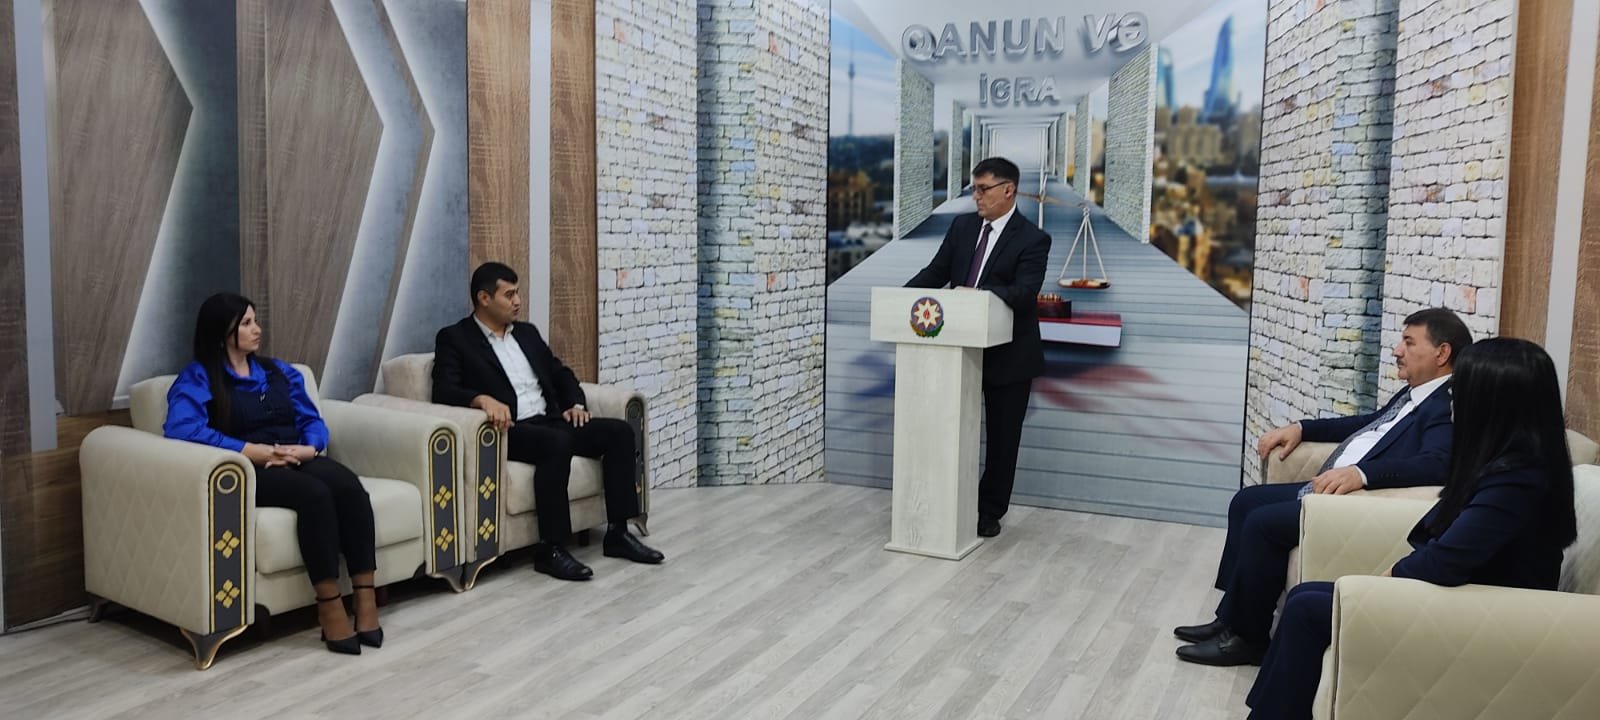 "Qanun və İcra” proqramı tanınmış hüquqşünas Əkbər Yusifoğlunun təqdimatında - FOTO\VİDEO